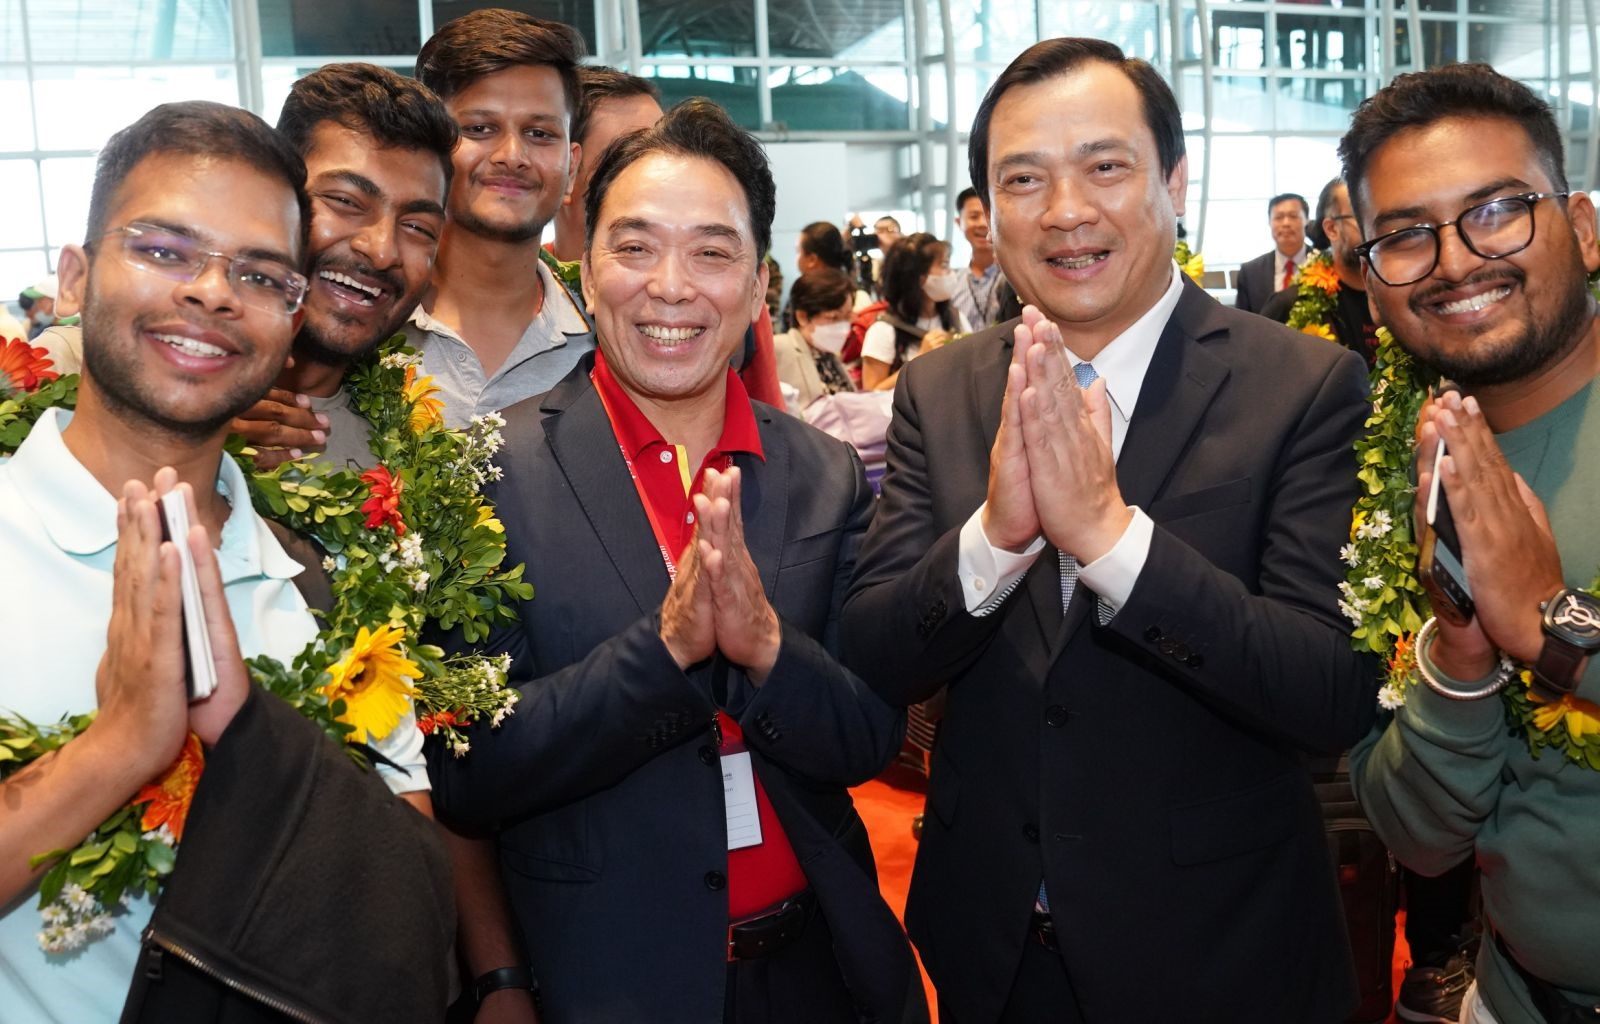 Tổng cục trưởng Tổng cục Du lịch Nguyễn Trùng Khánh (thứ 2 từ phải sang) và Thành viên HĐQT Vietjet Nguyễn Anh Tuấn (thứ 3 từ phải sang) tặng hoa chào mừng hành khách.